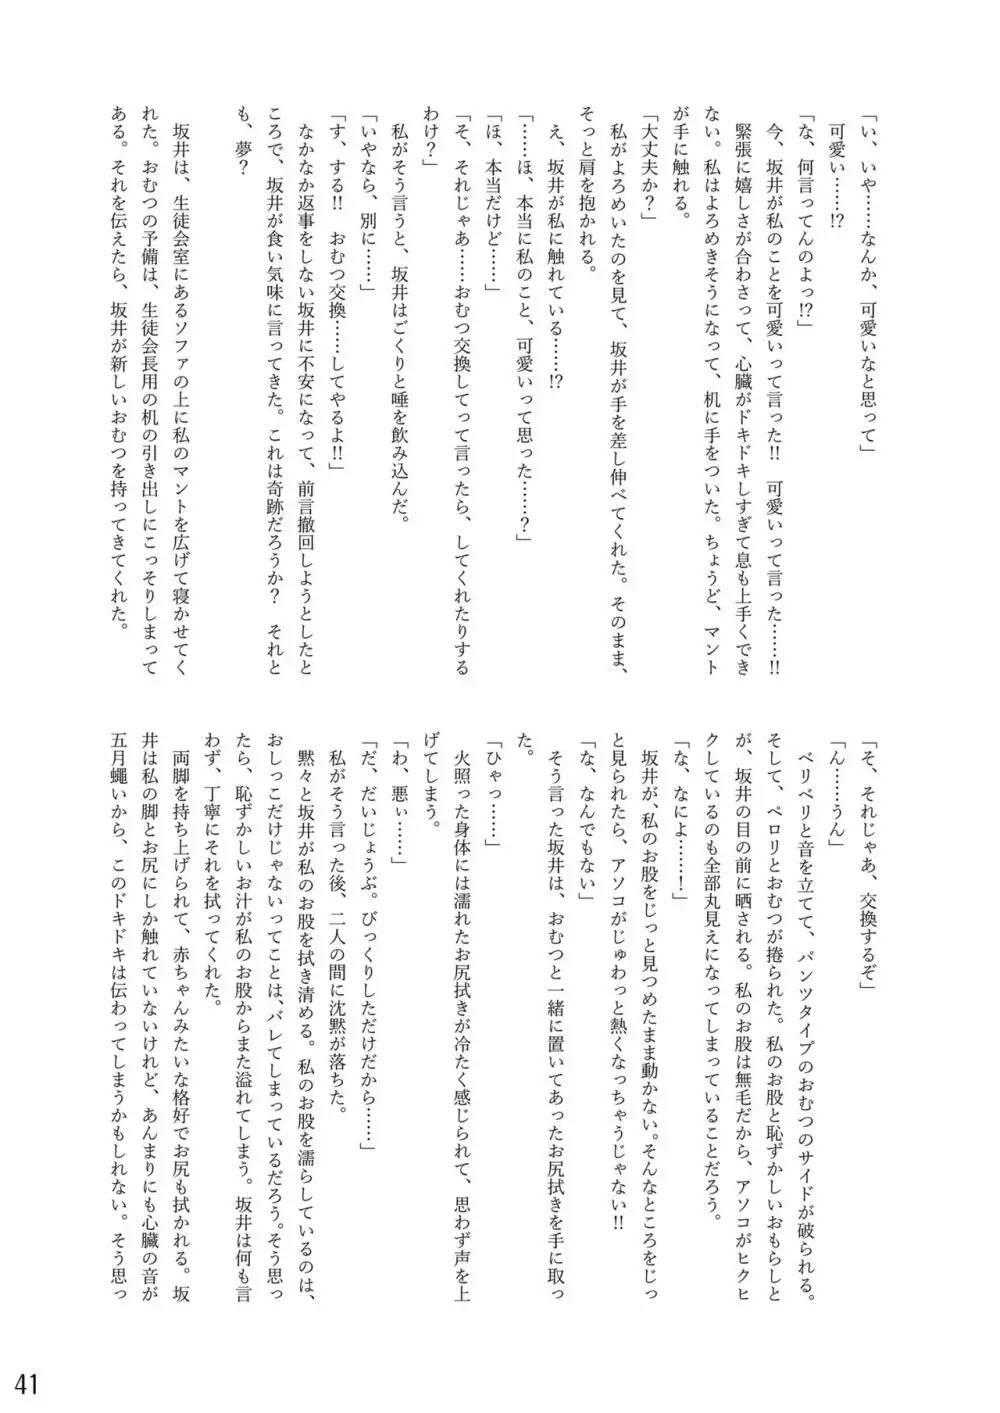 おむ☆フェス8開催記念合同誌「おむつっ娘PARTY!9」 41ページ